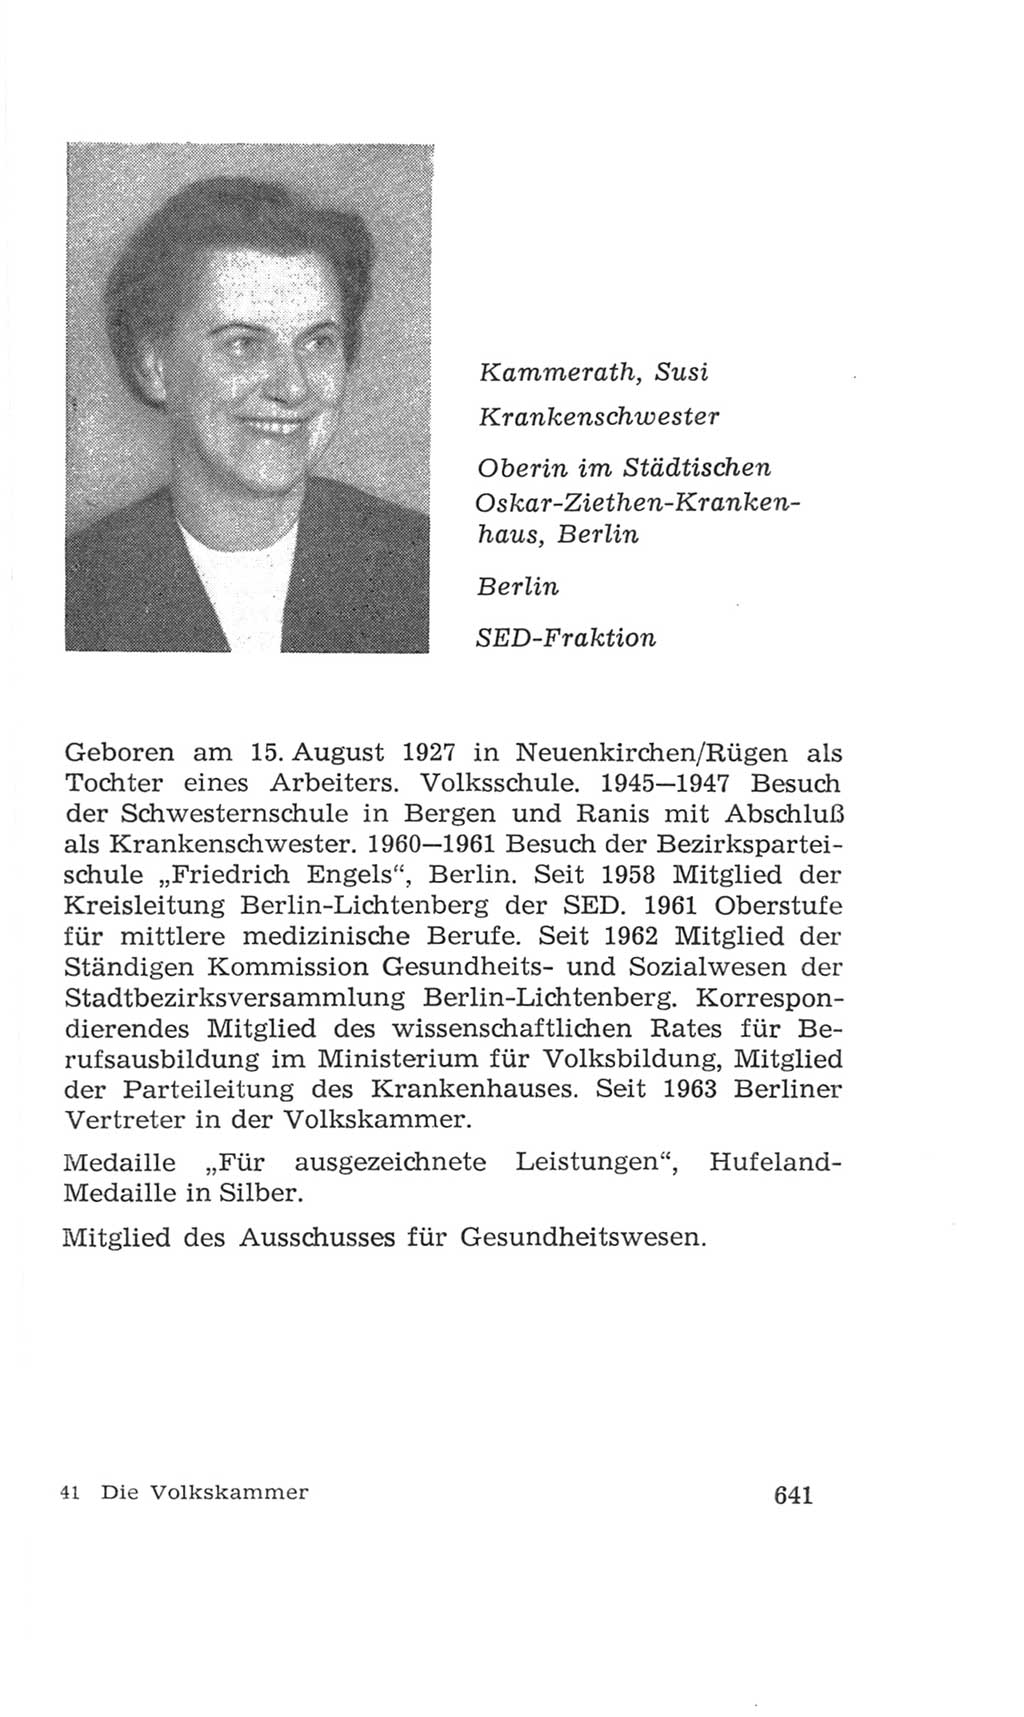 Volkskammer (VK) der Deutschen Demokratischen Republik (DDR), 4. Wahlperiode 1963-1967, Seite 641 (VK. DDR 4. WP. 1963-1967, S. 641)